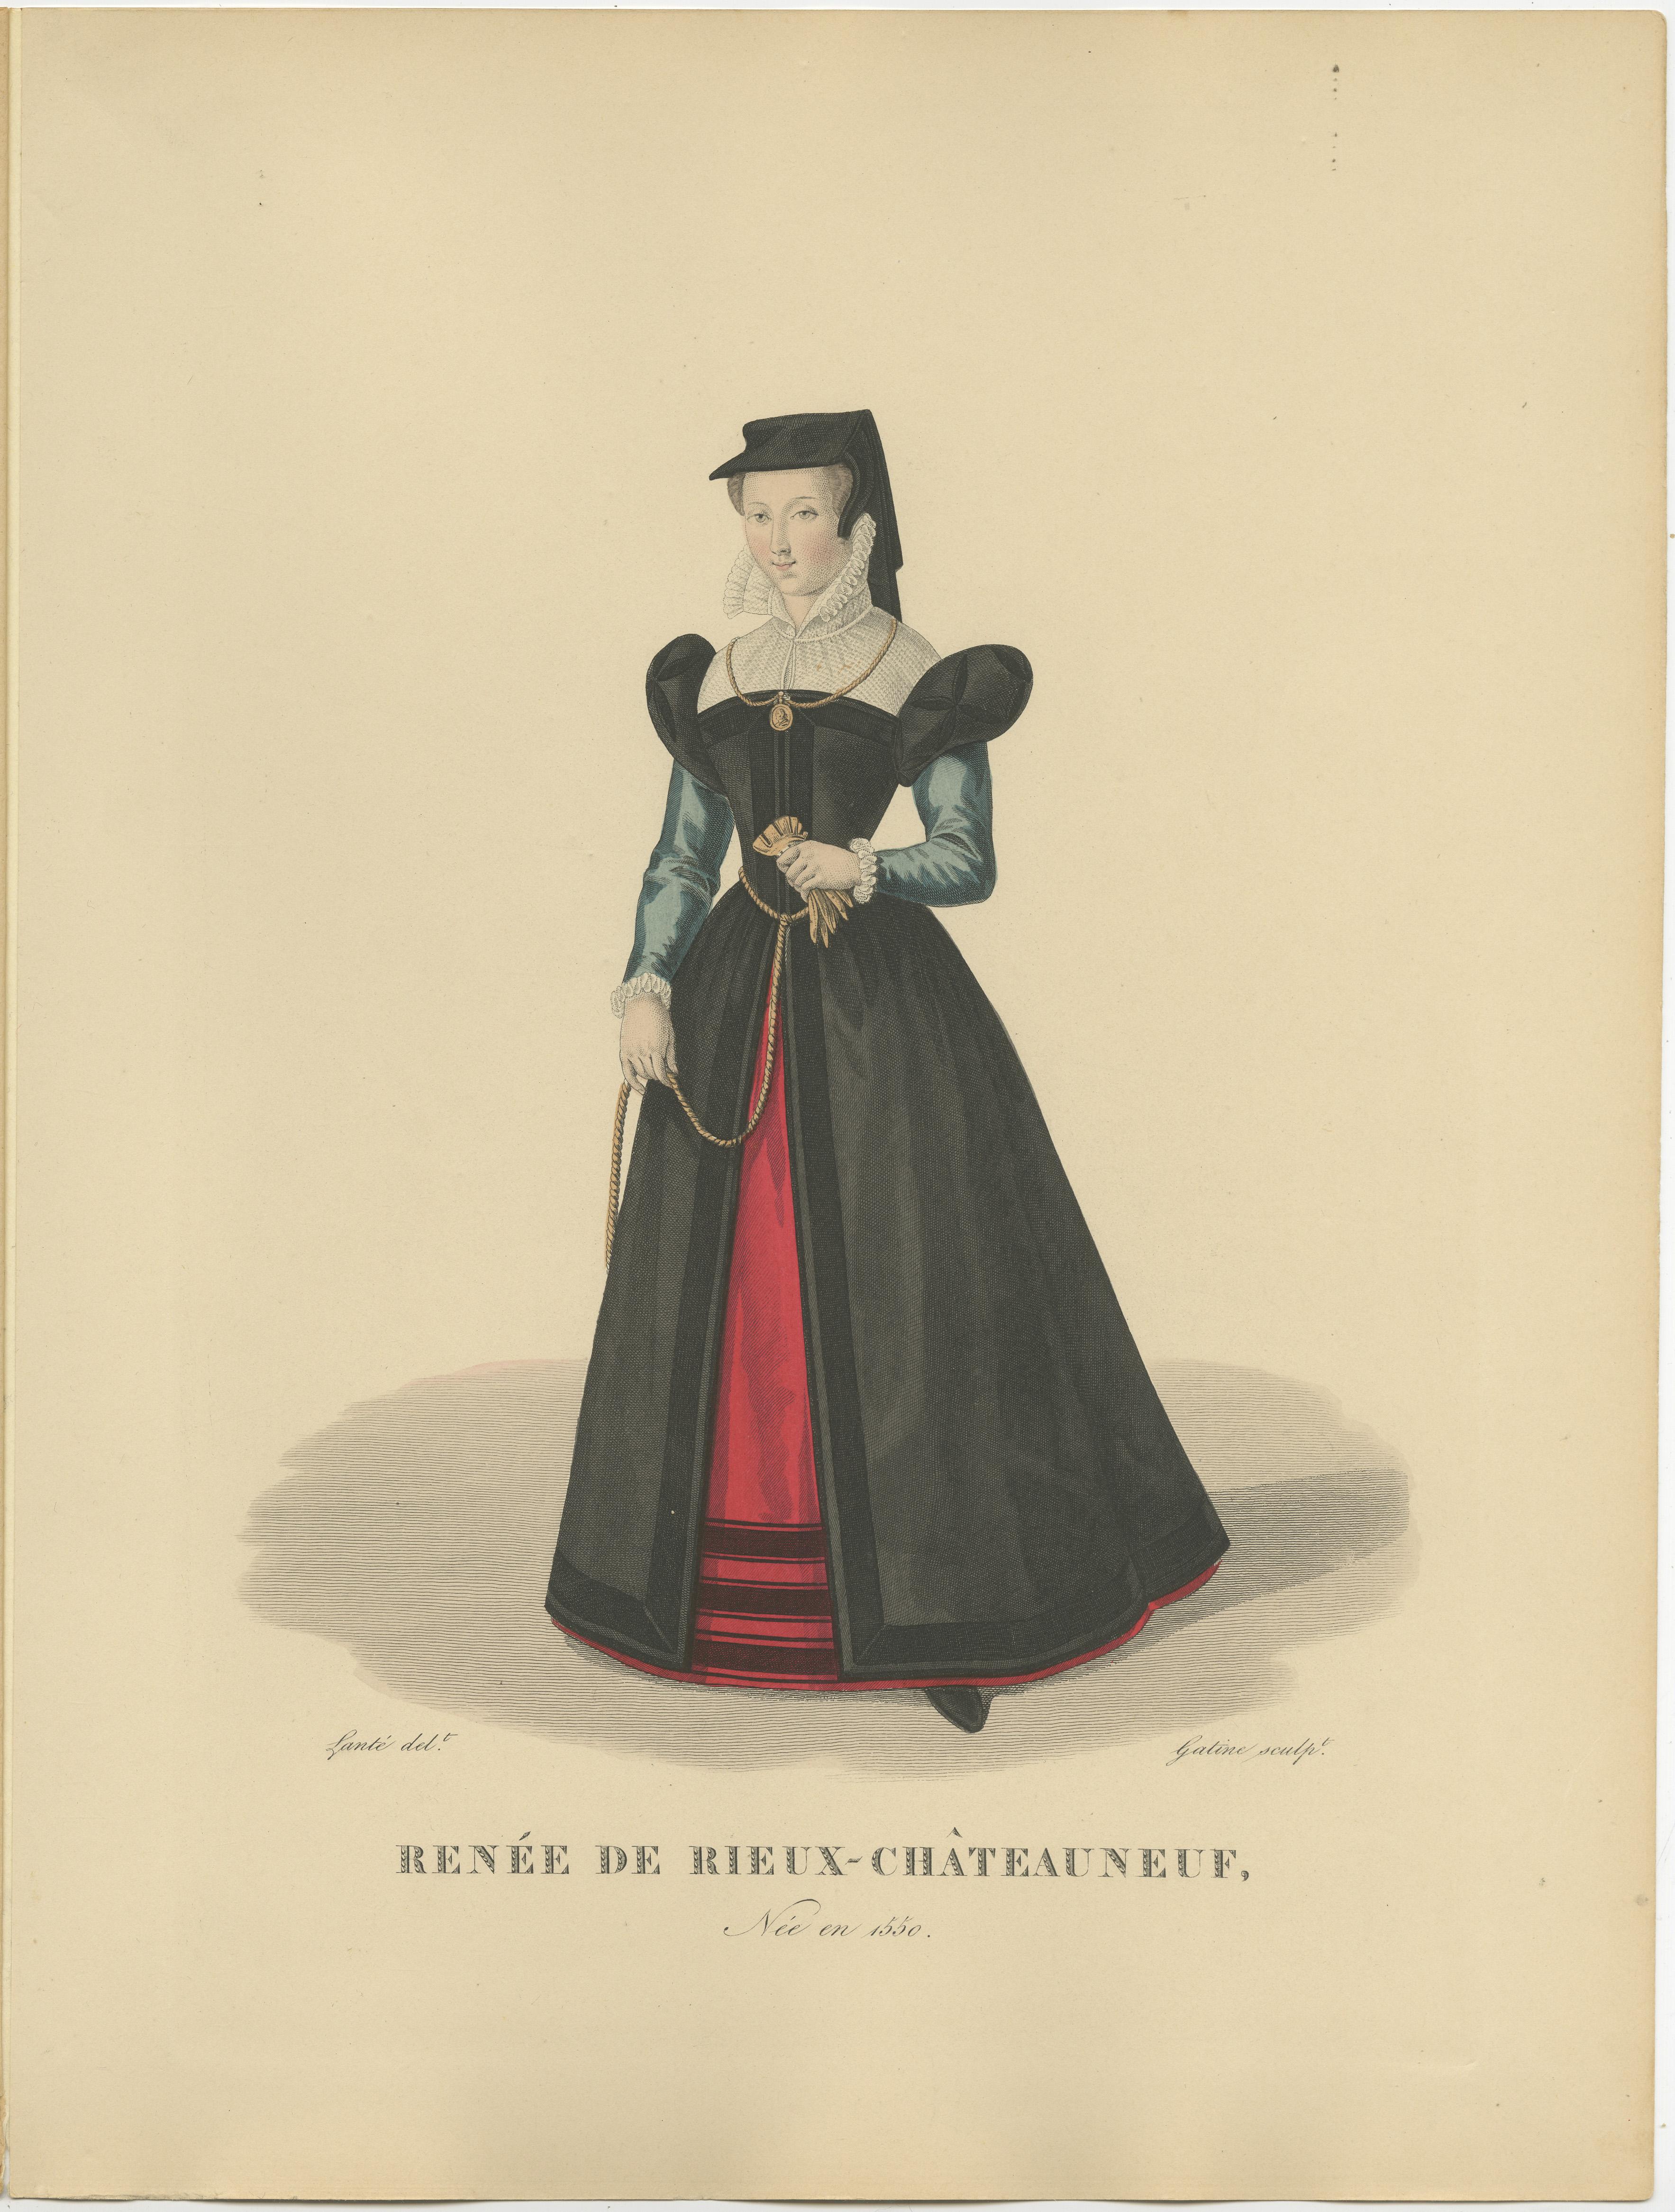 Impression ancienne intitulée 'RENEE DE RIEUX CHATEAUNEUF' Impression ancienne originale de La Belle Châteauneuf.

